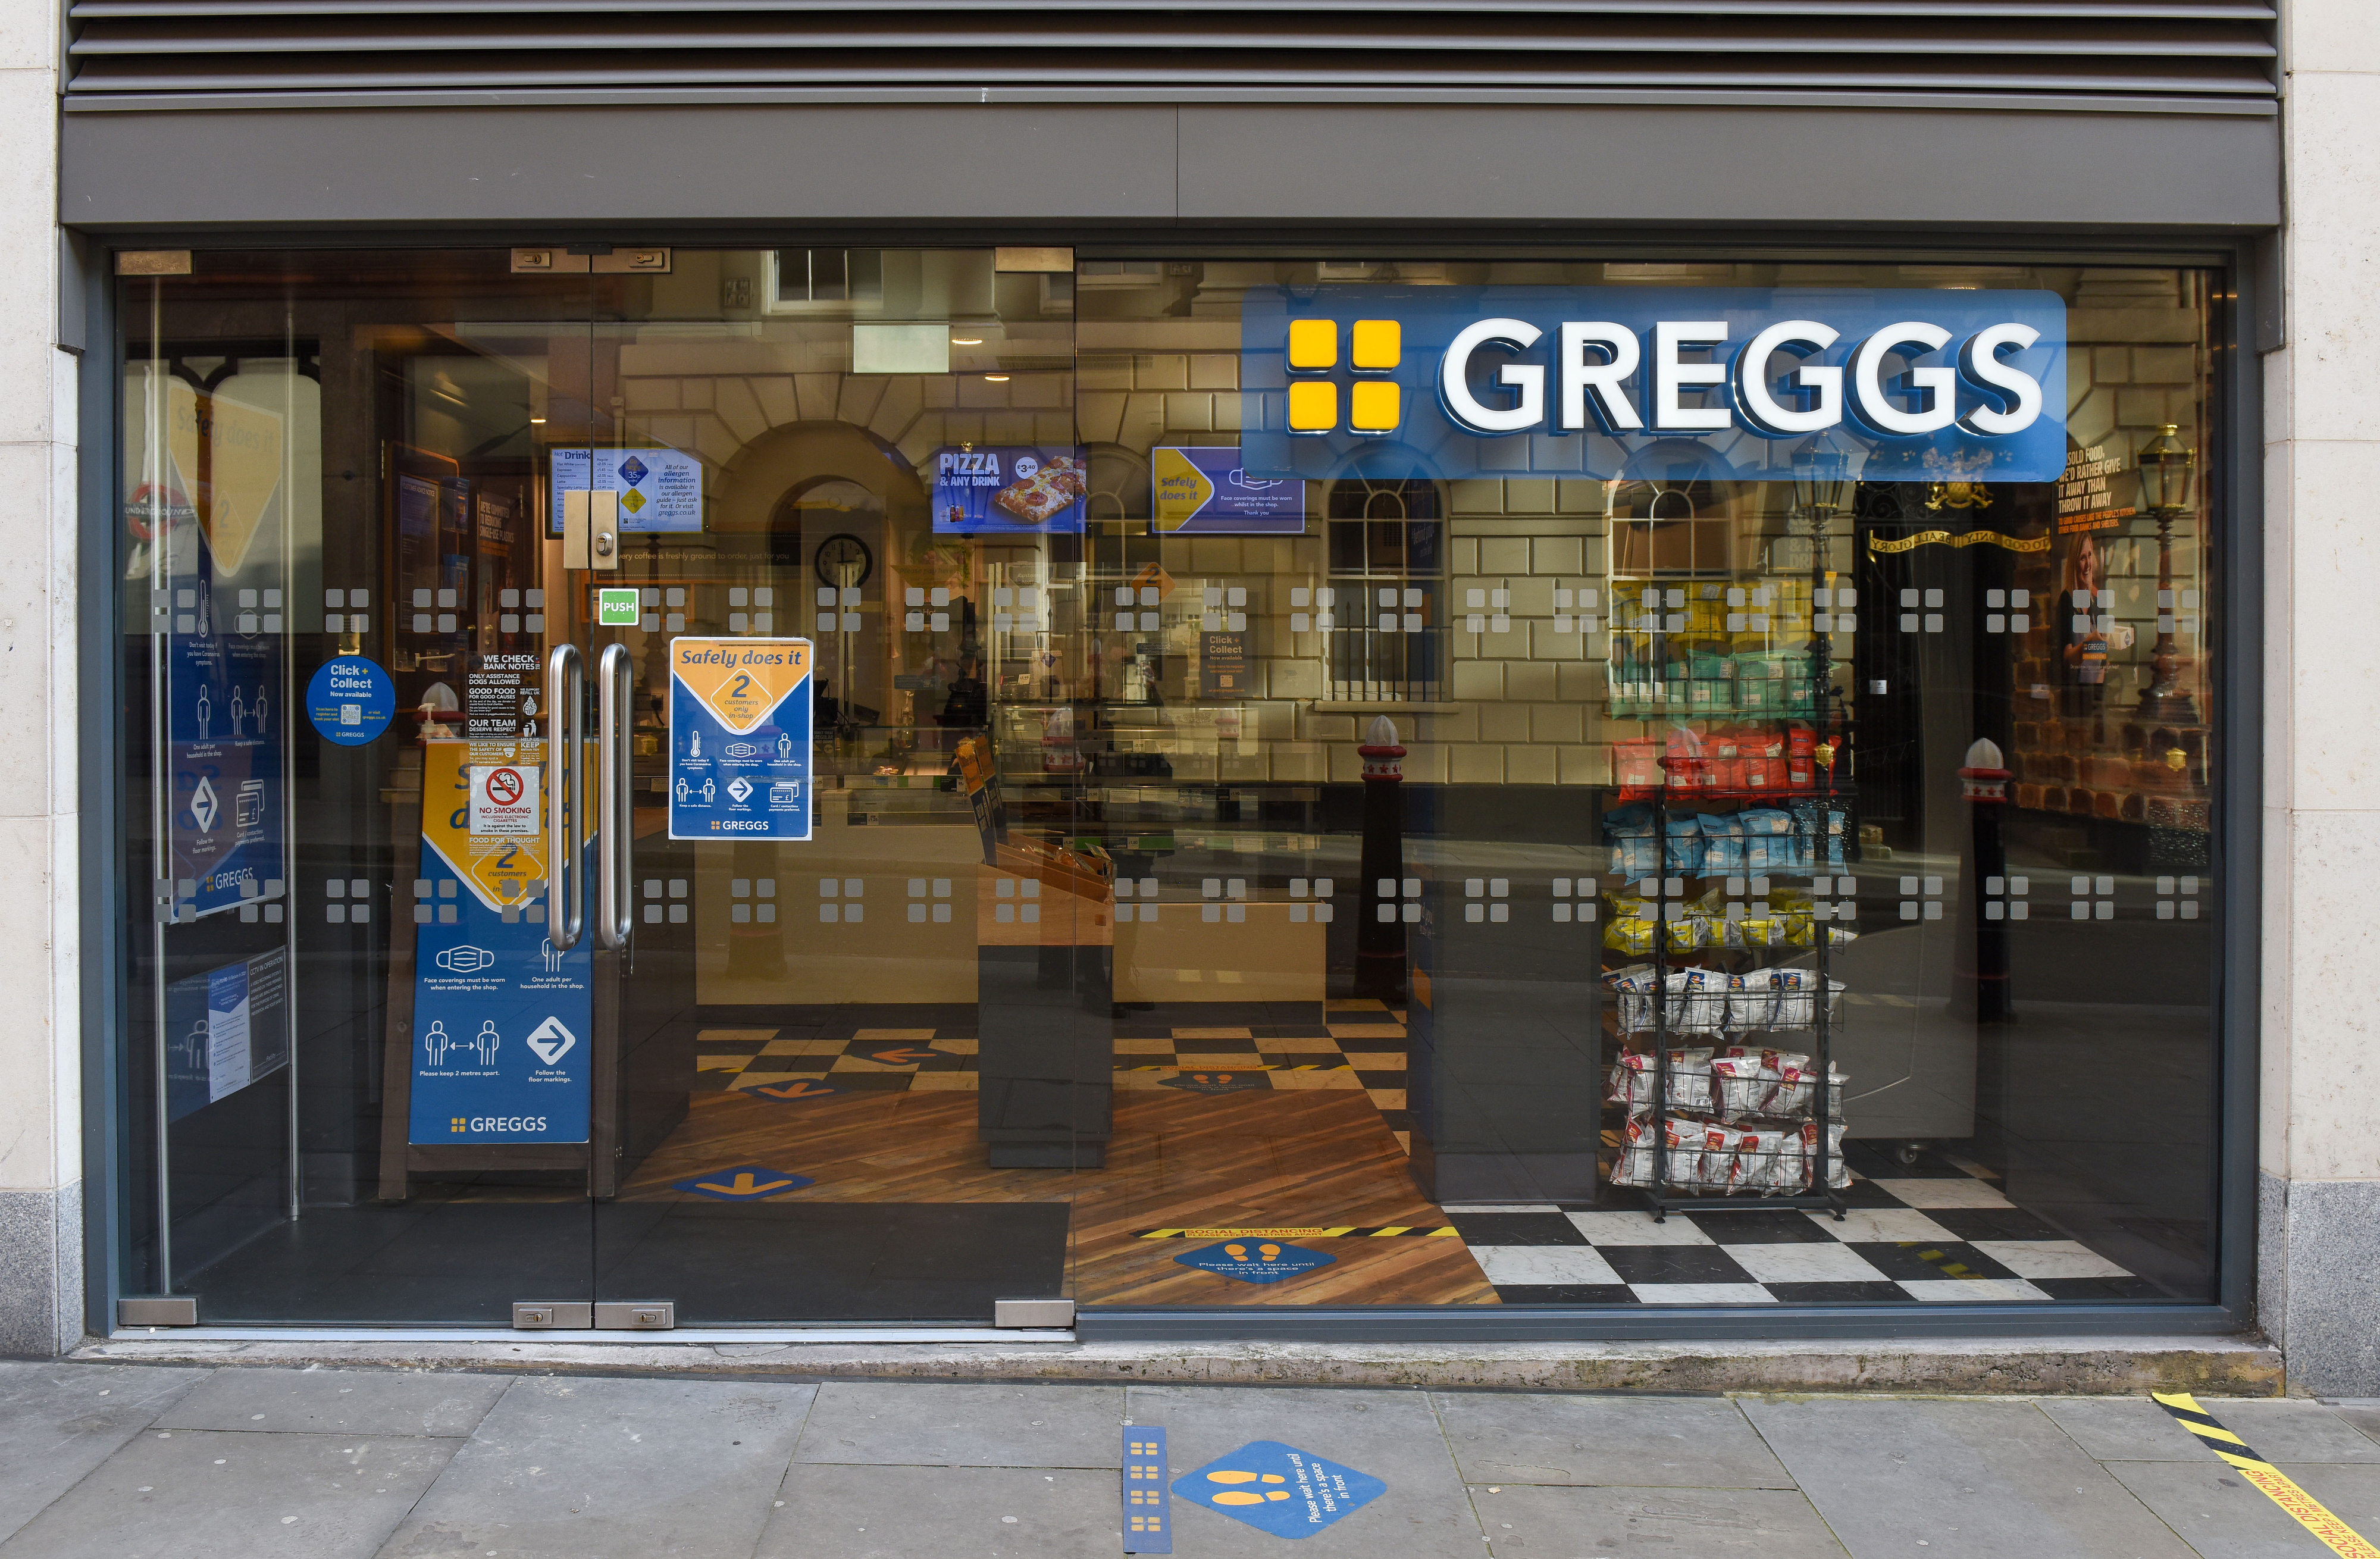 Greggs grocery store in London, UK.